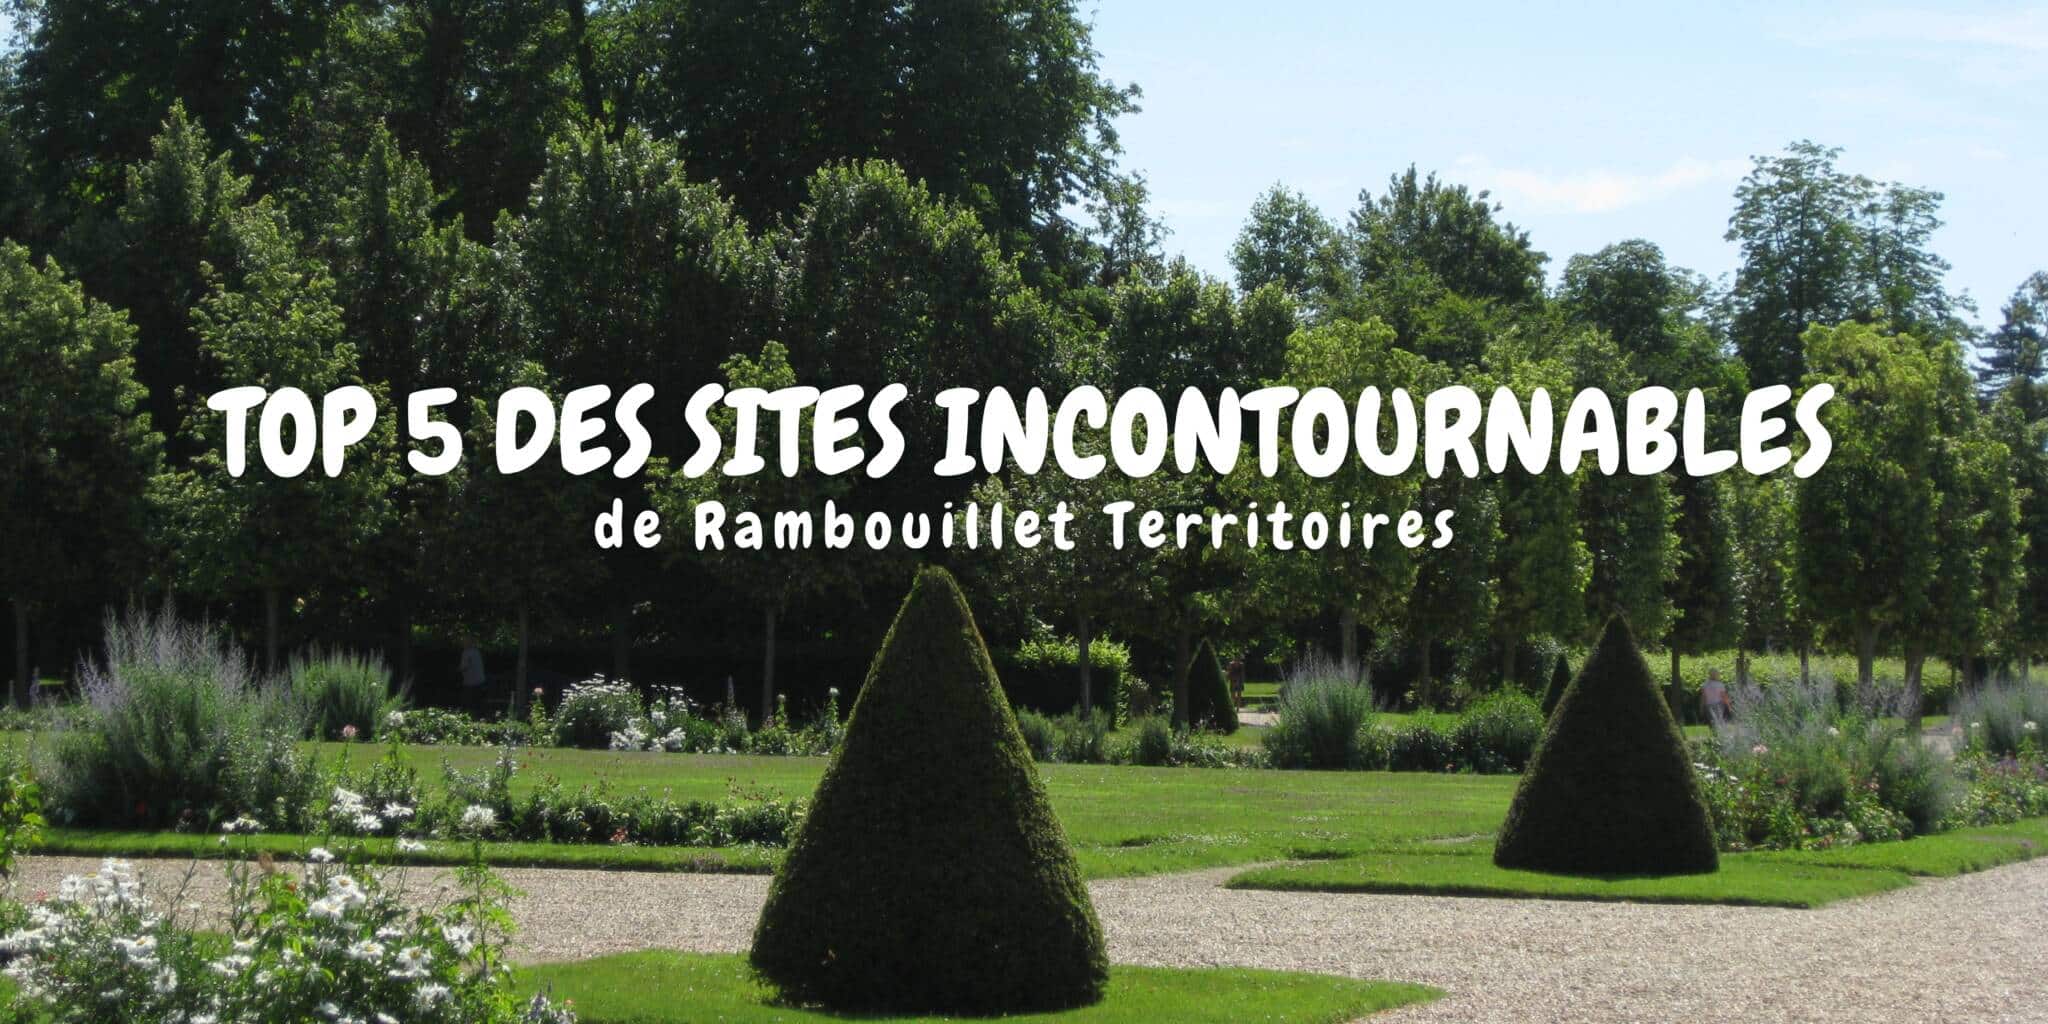 Top 5 des sites incontournables de Rambouillet Territoires